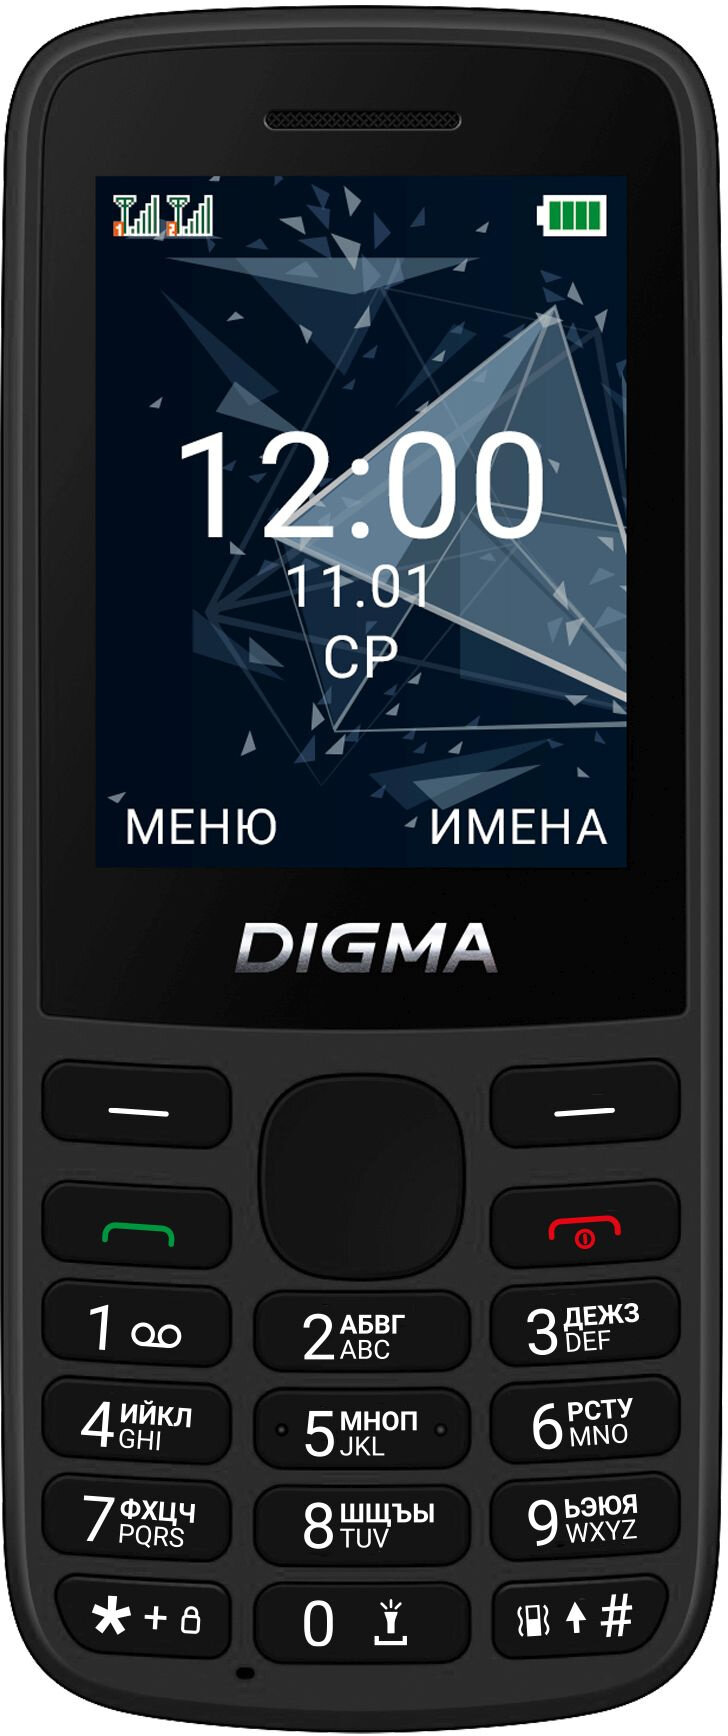 Мобильный телефон Digma 1888900 Linx 32Mb 32Mb черный моноблок 2Sim 2.4" 240x320 GSM900/1800 GSM1900 - фото №2